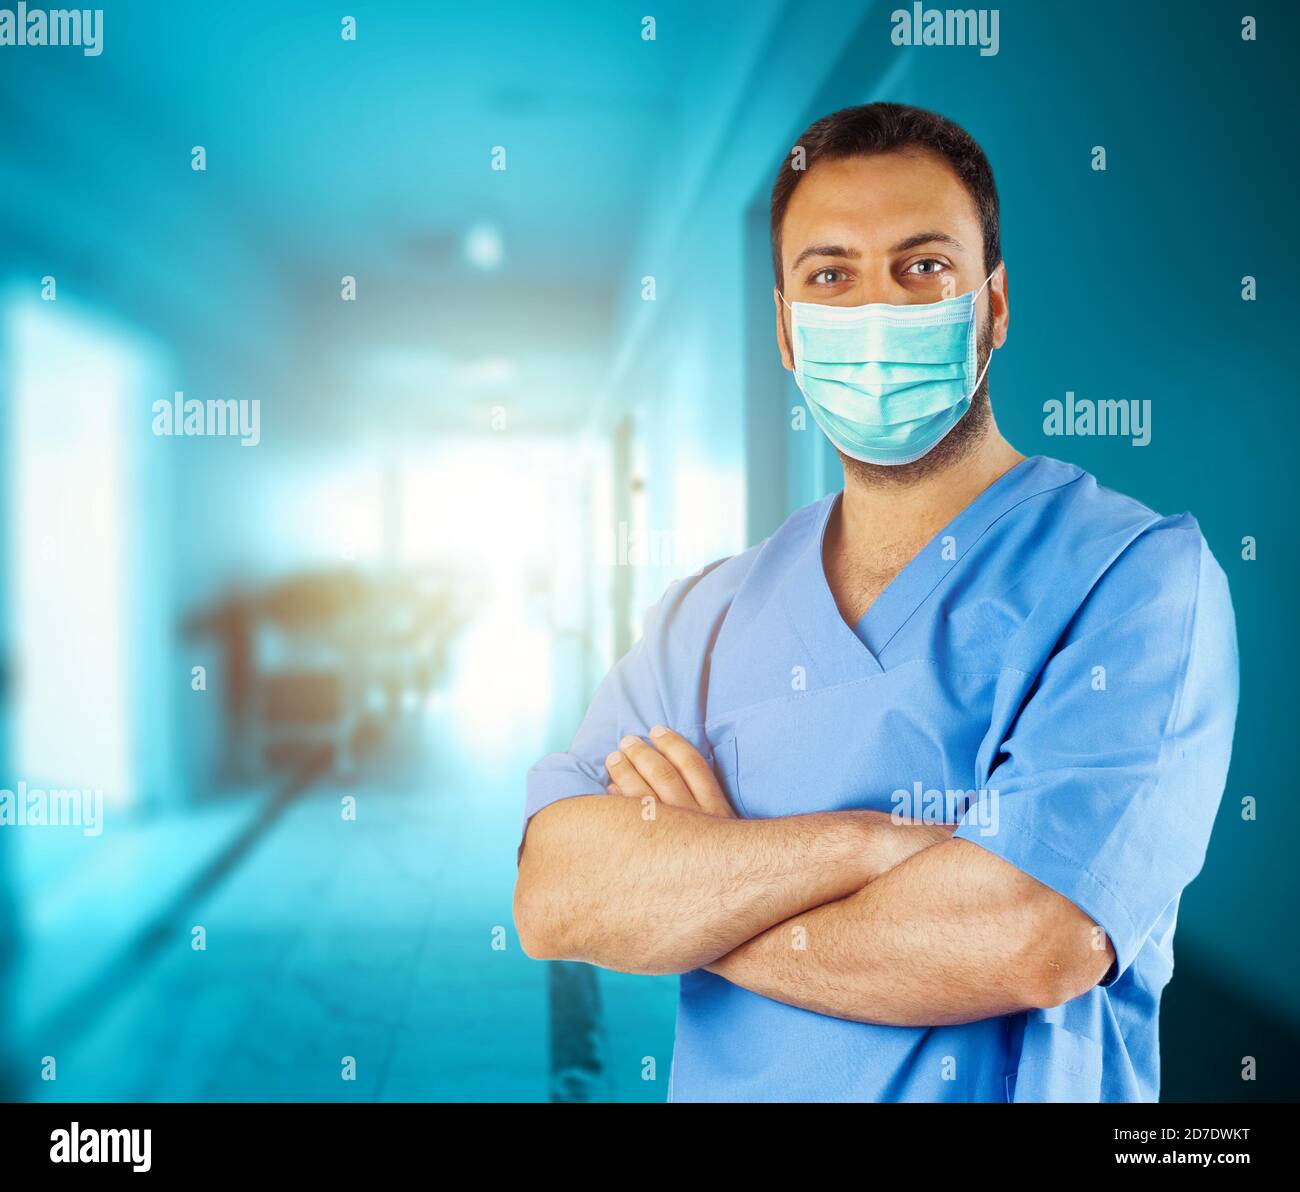 Ritratto di un infermiere, o medico, in ospedale che indossa una maschera chirurgica. Foto Stock